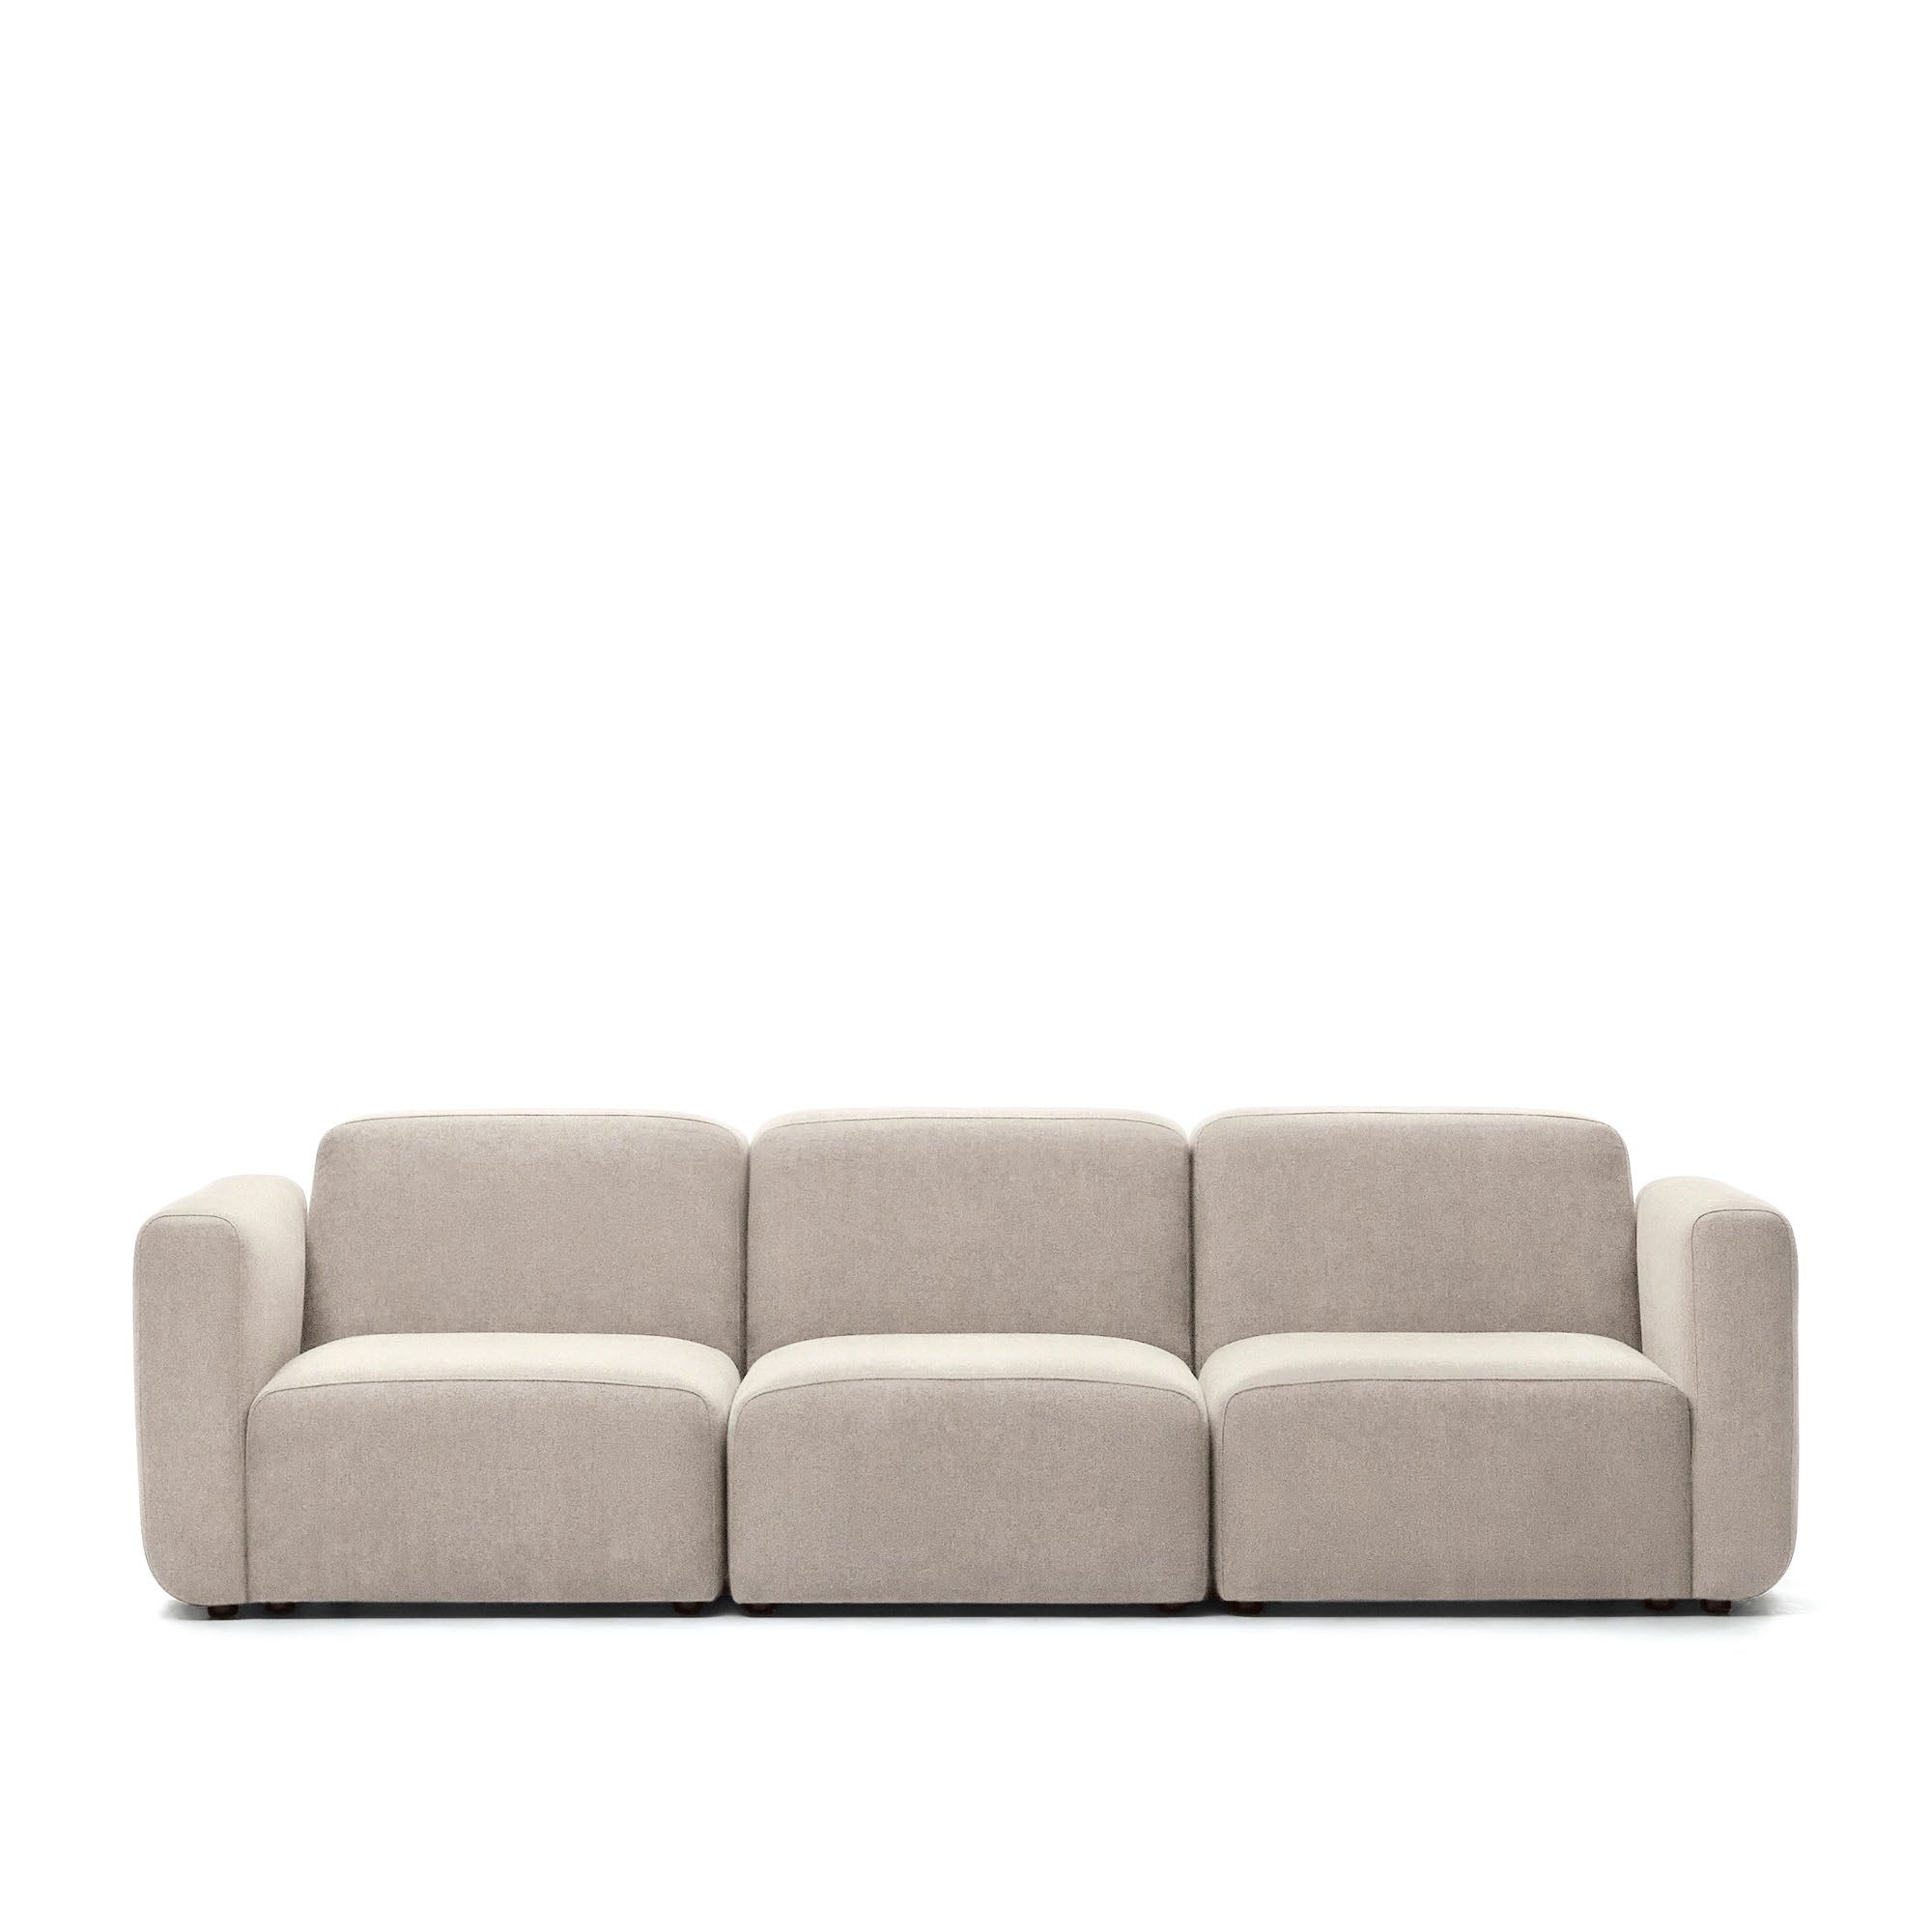 Neom 3 személyes moduláris kanapé bézs színben, 263 cm